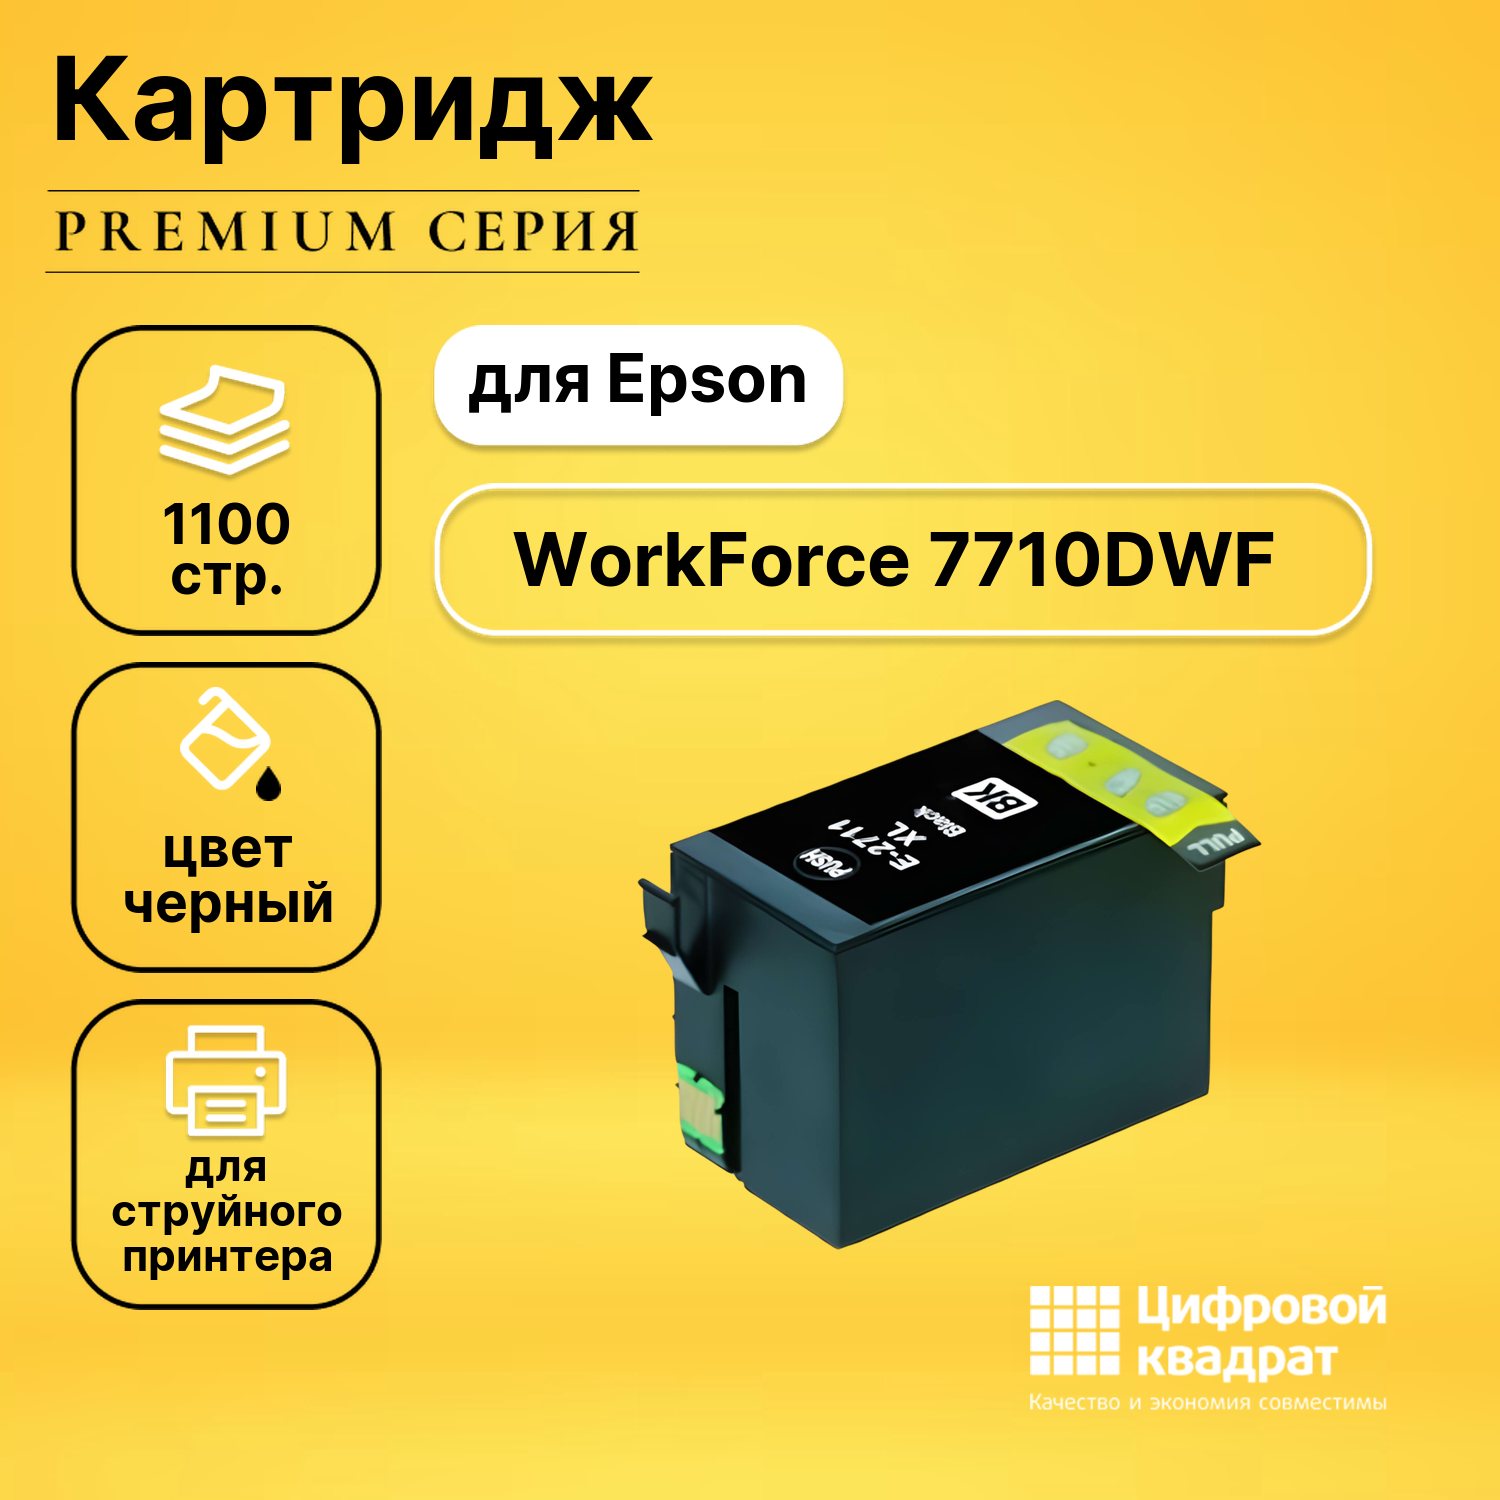 Картридж DS для Epson WorkForce 7710 увеличенный ресурс совместимый